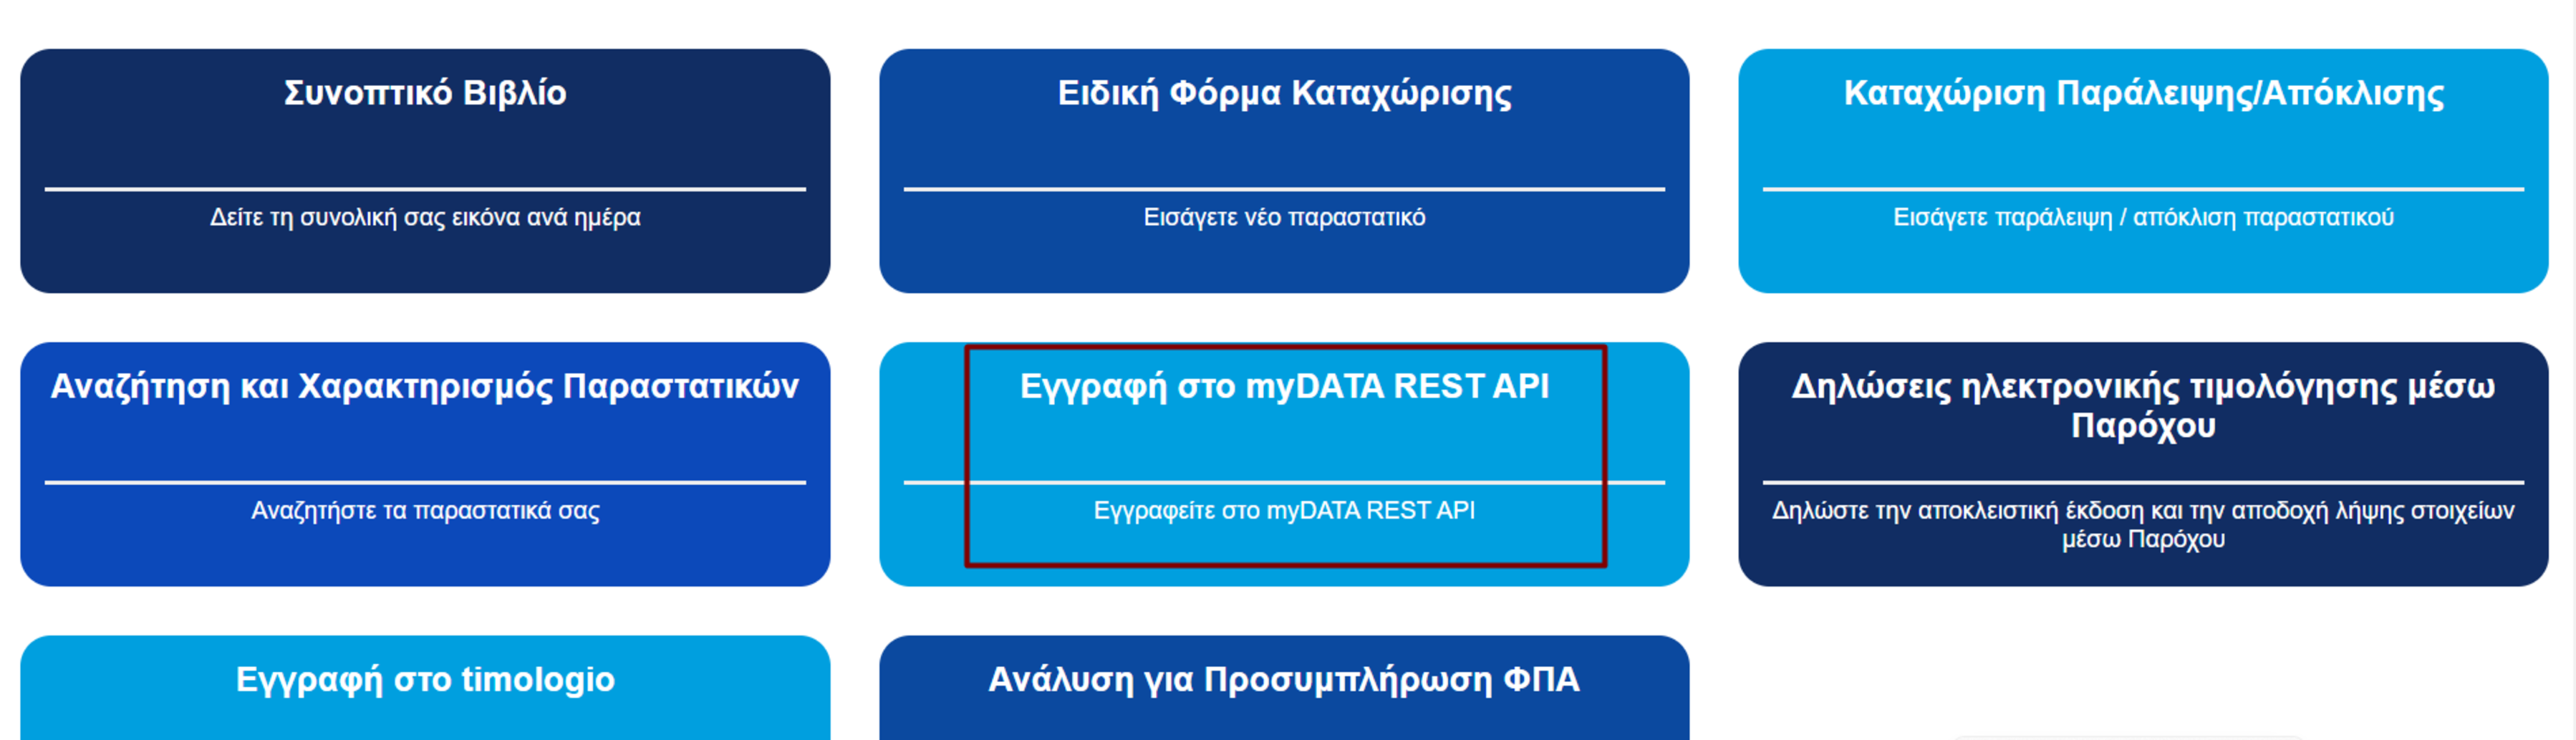 myDATA REST API-2η σελίδα